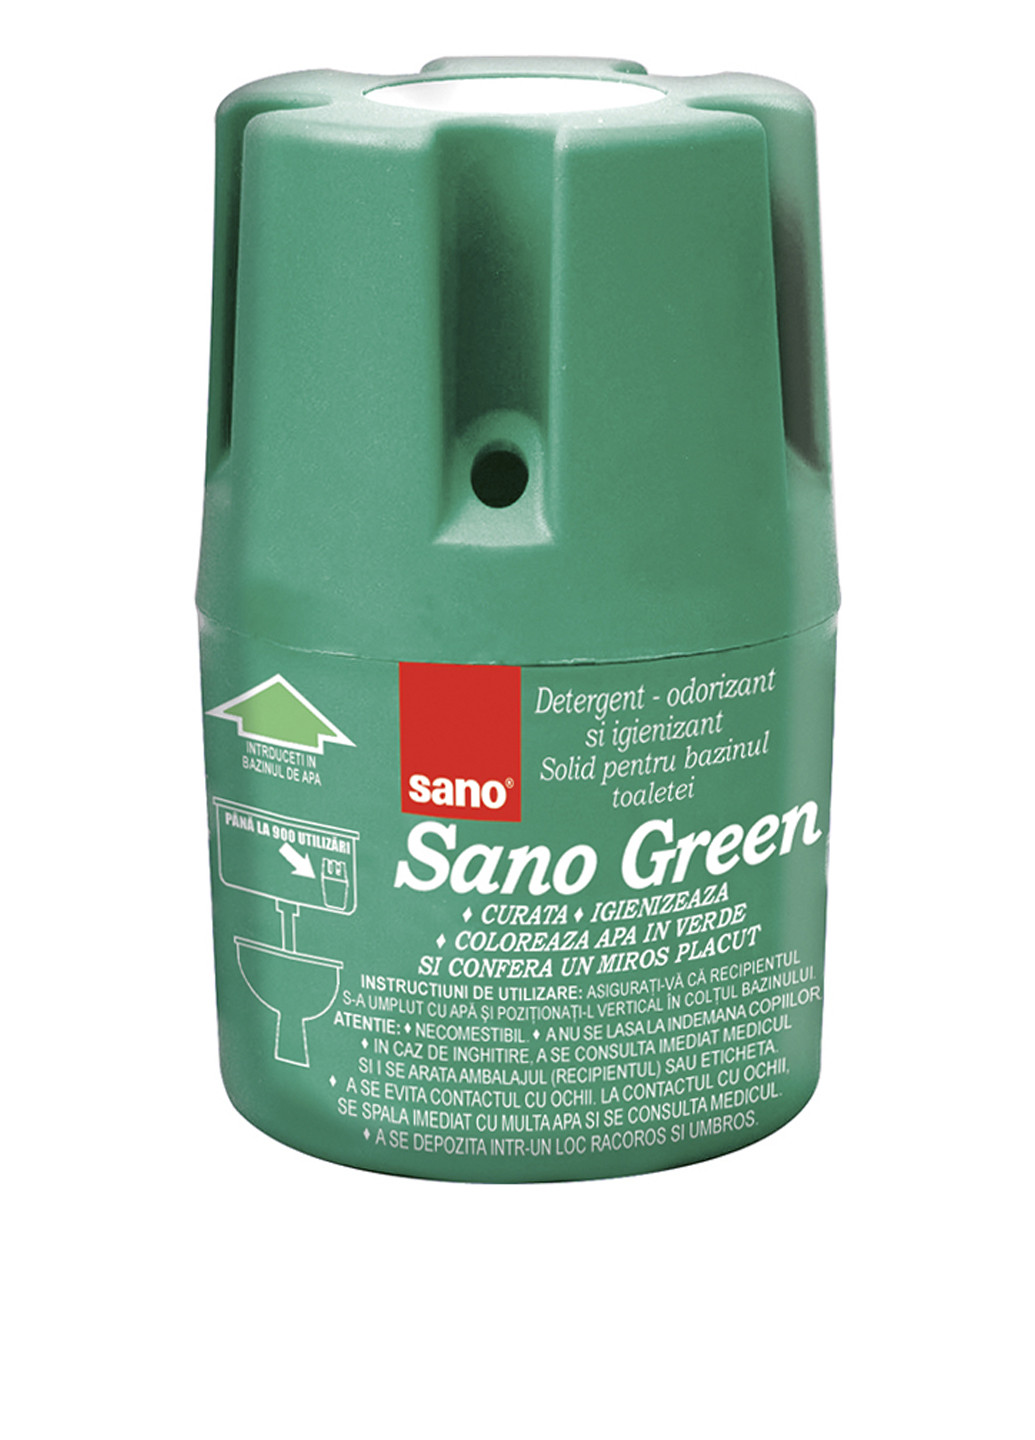 Блок для сливного бачка Green, 150 г Sano (89734083)